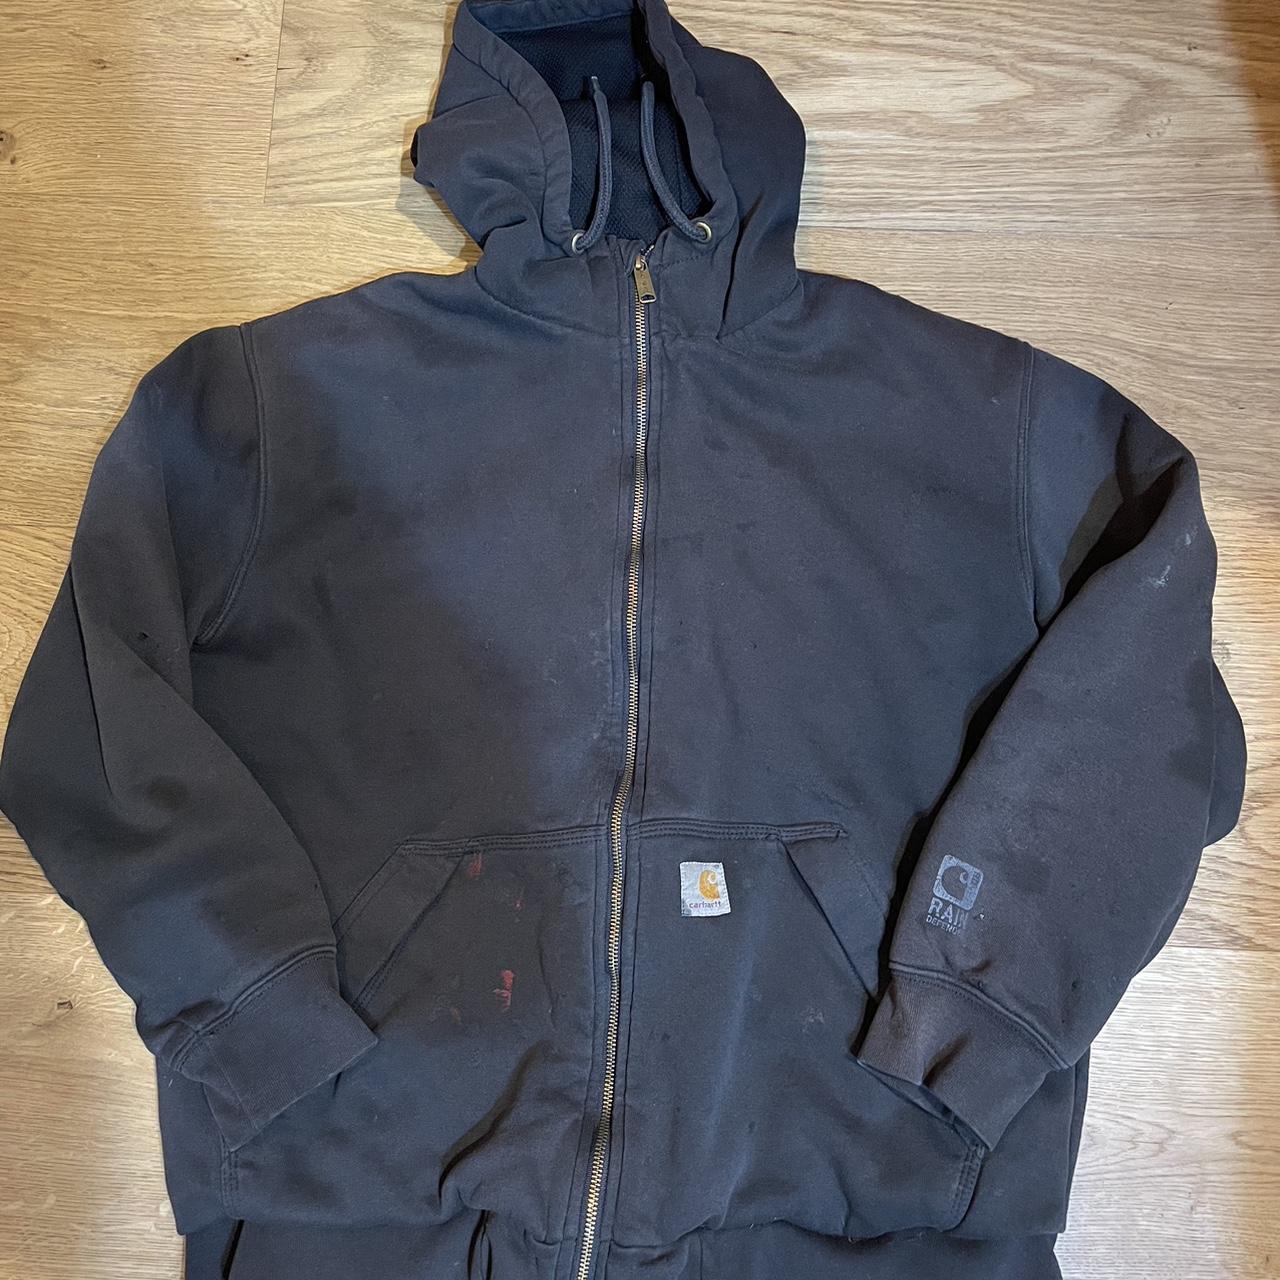 Black carhartt zip up jacket Good condition few... - Depop